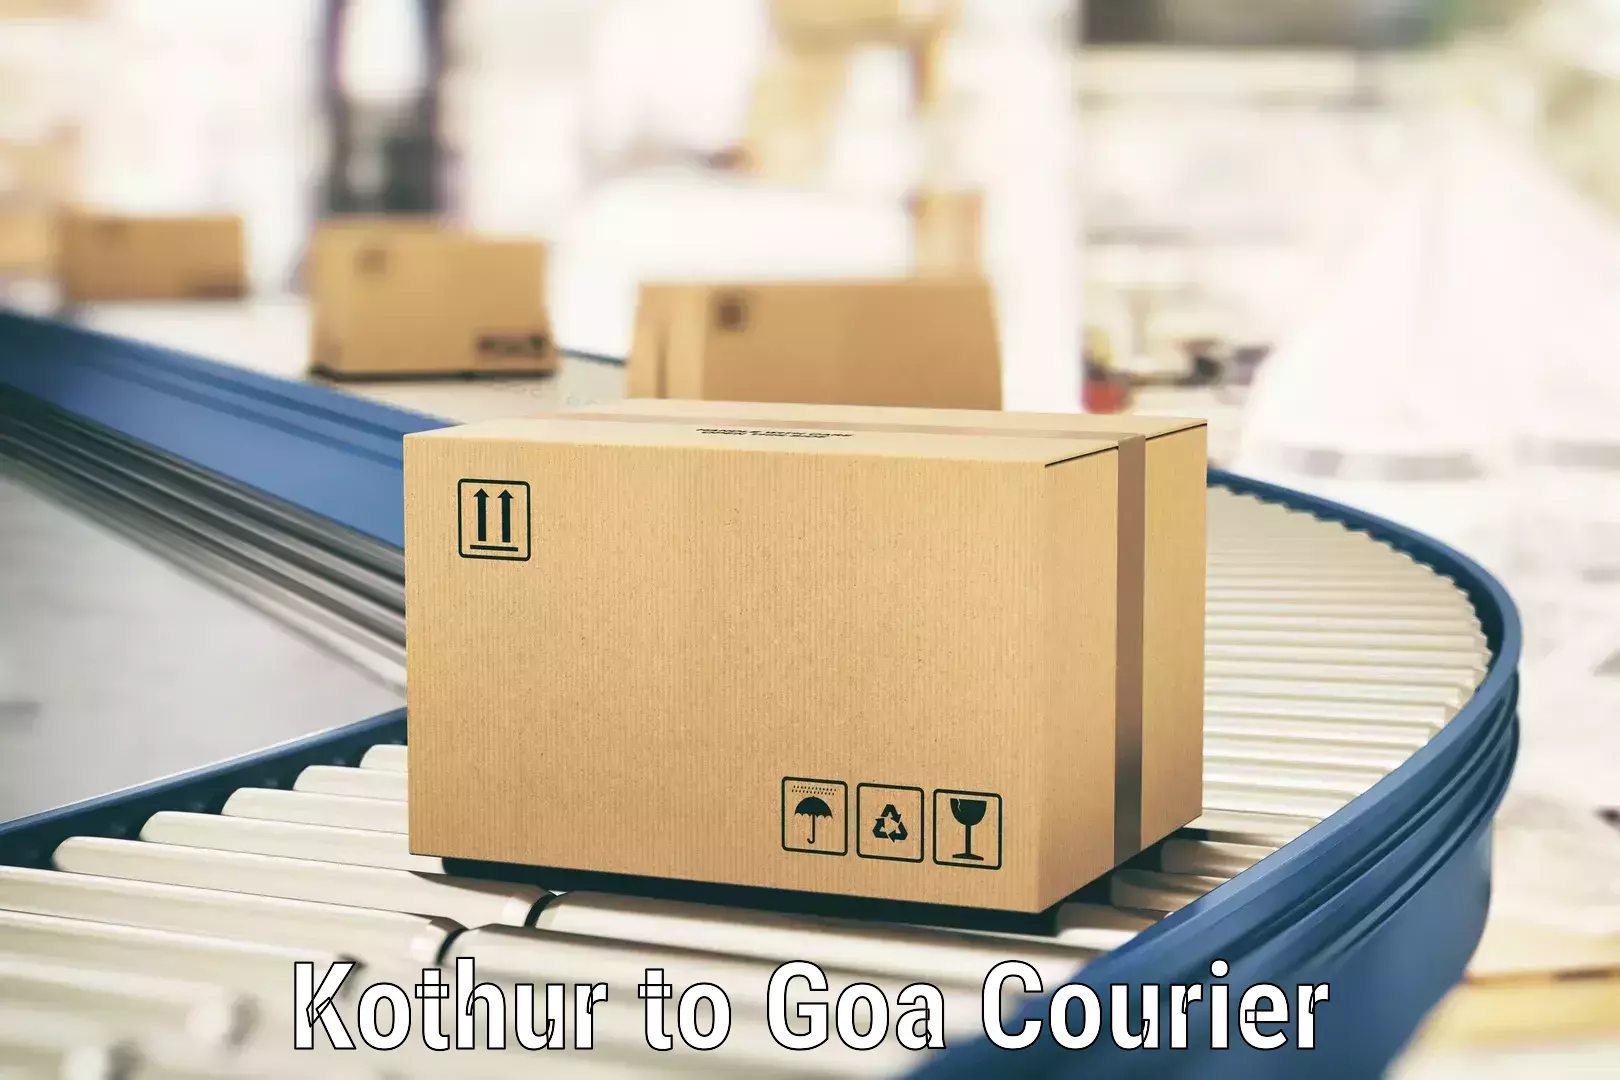 Advanced shipping services Kothur to Goa